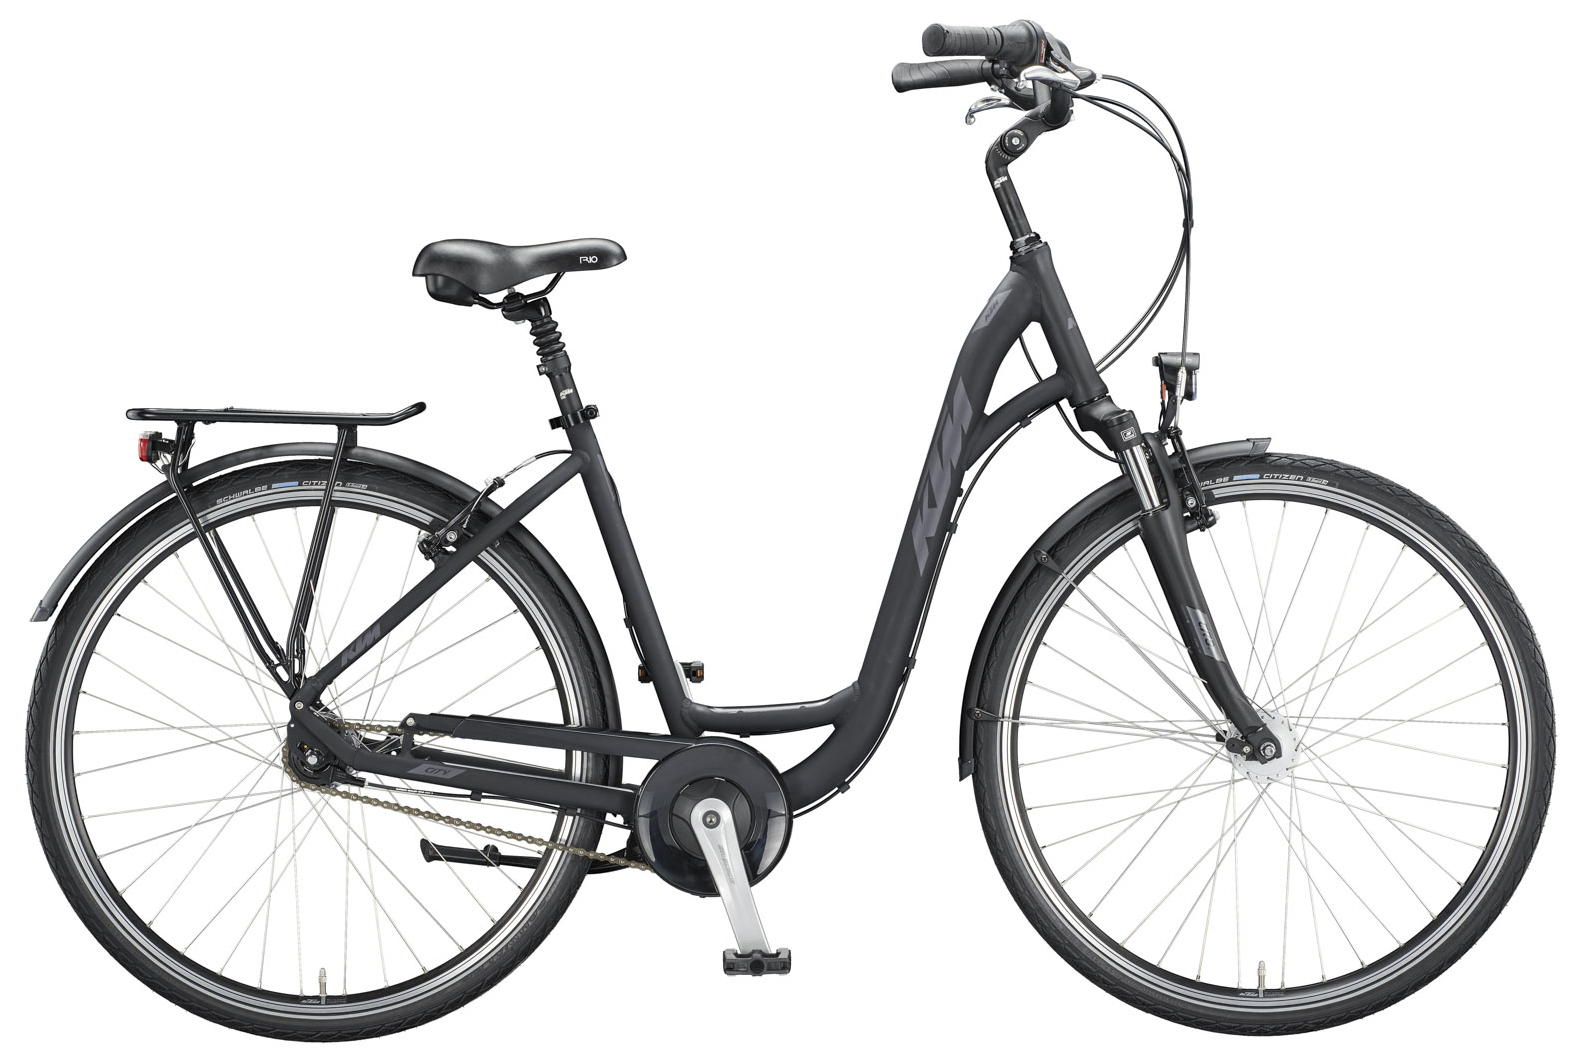  Отзывы о Женском велосипеде KTM City Line 28 2020